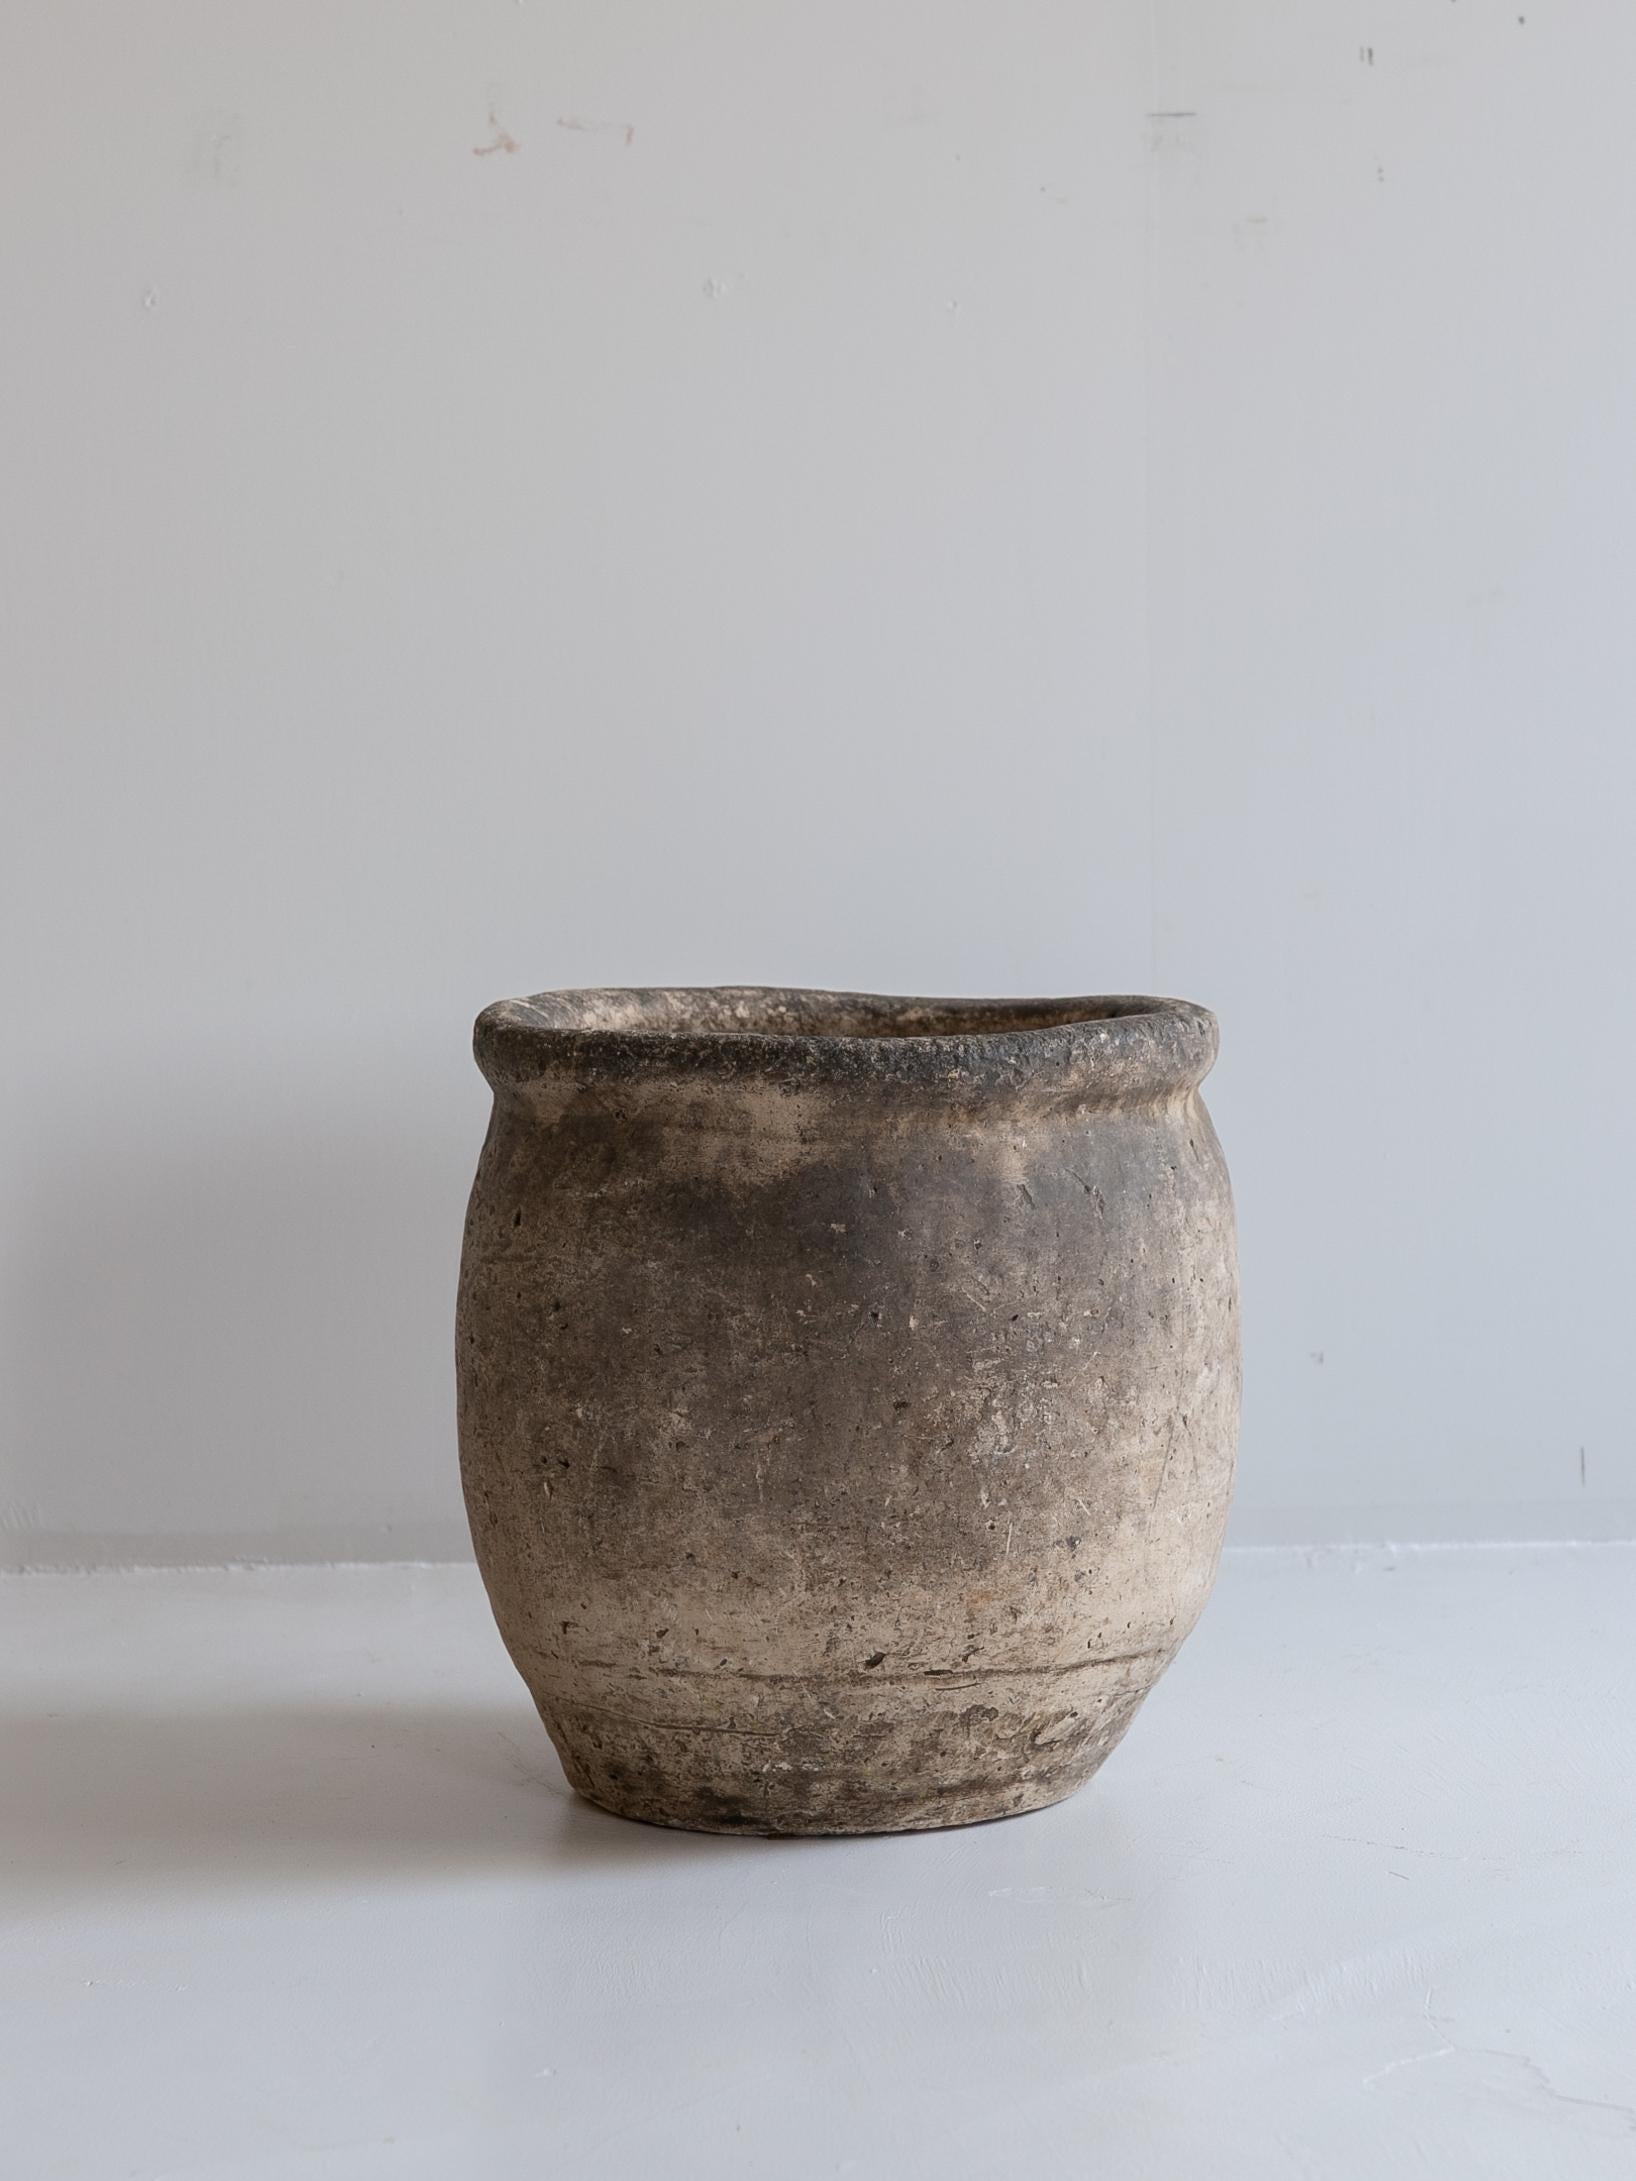 Il s'agit d'une très ancienne jarre en poterie japonaise.
Il date de la période Meiji (années 1800-1860).

On pense qu'il était utilisé pour éteindre les feux de charbon de bois.

L'assombrissement est dû à la suie du foyer.
Très belle.

La culture